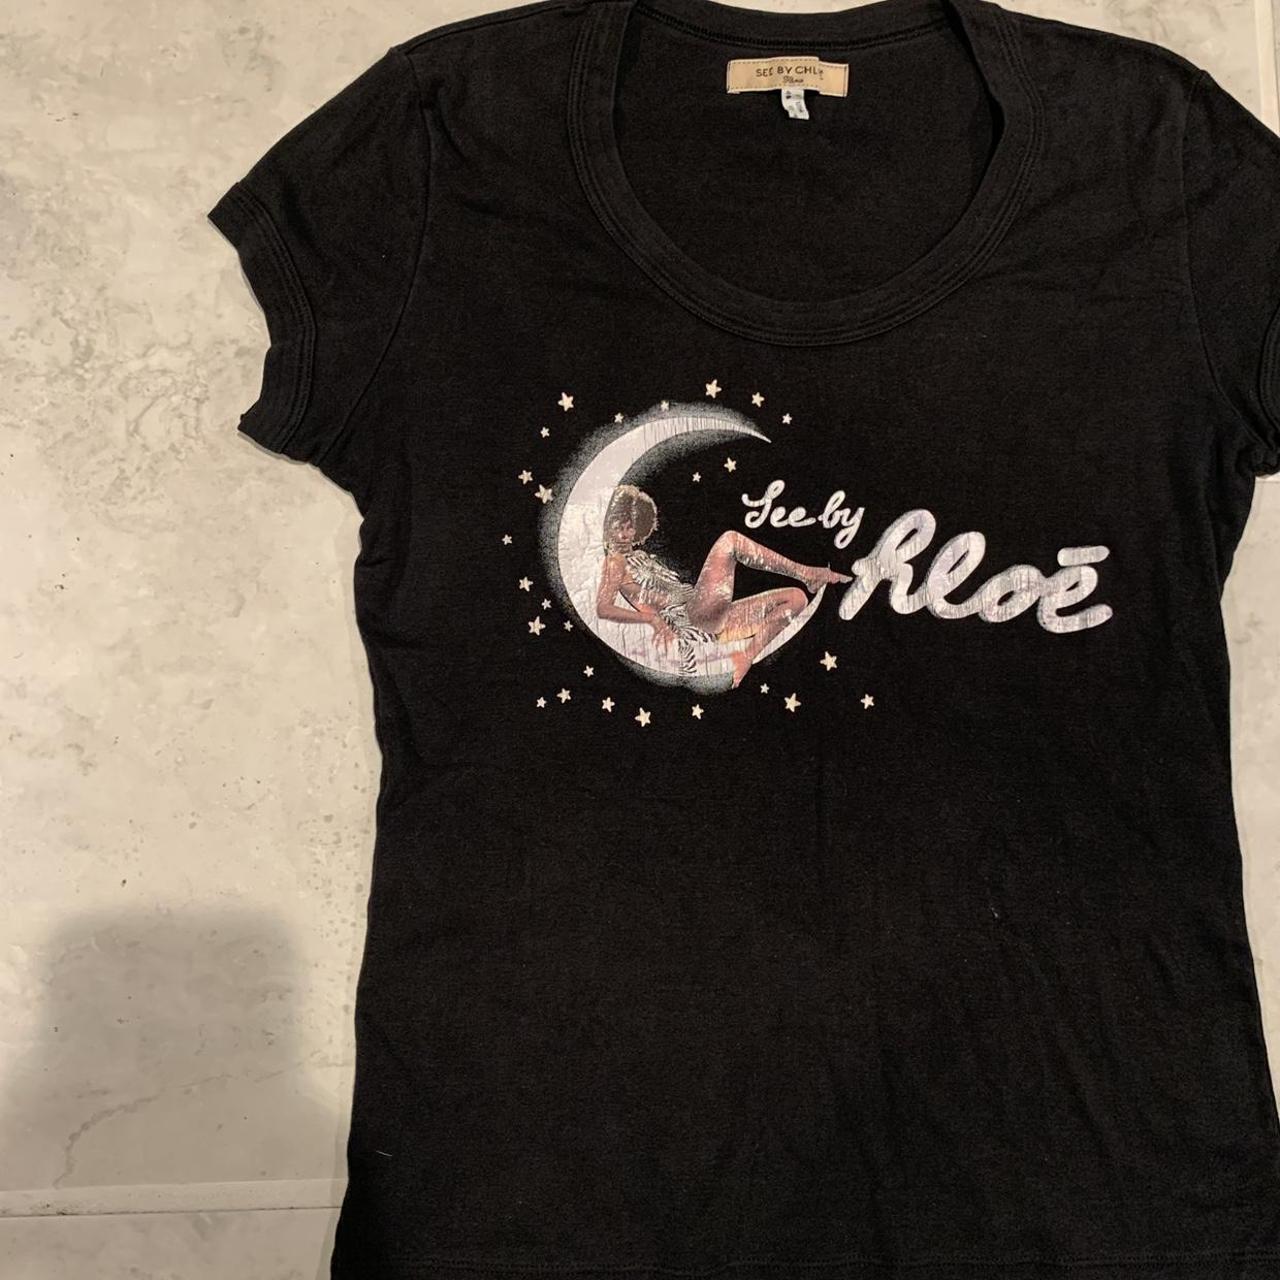 See by Chloé Women's Black T-shirt (2)